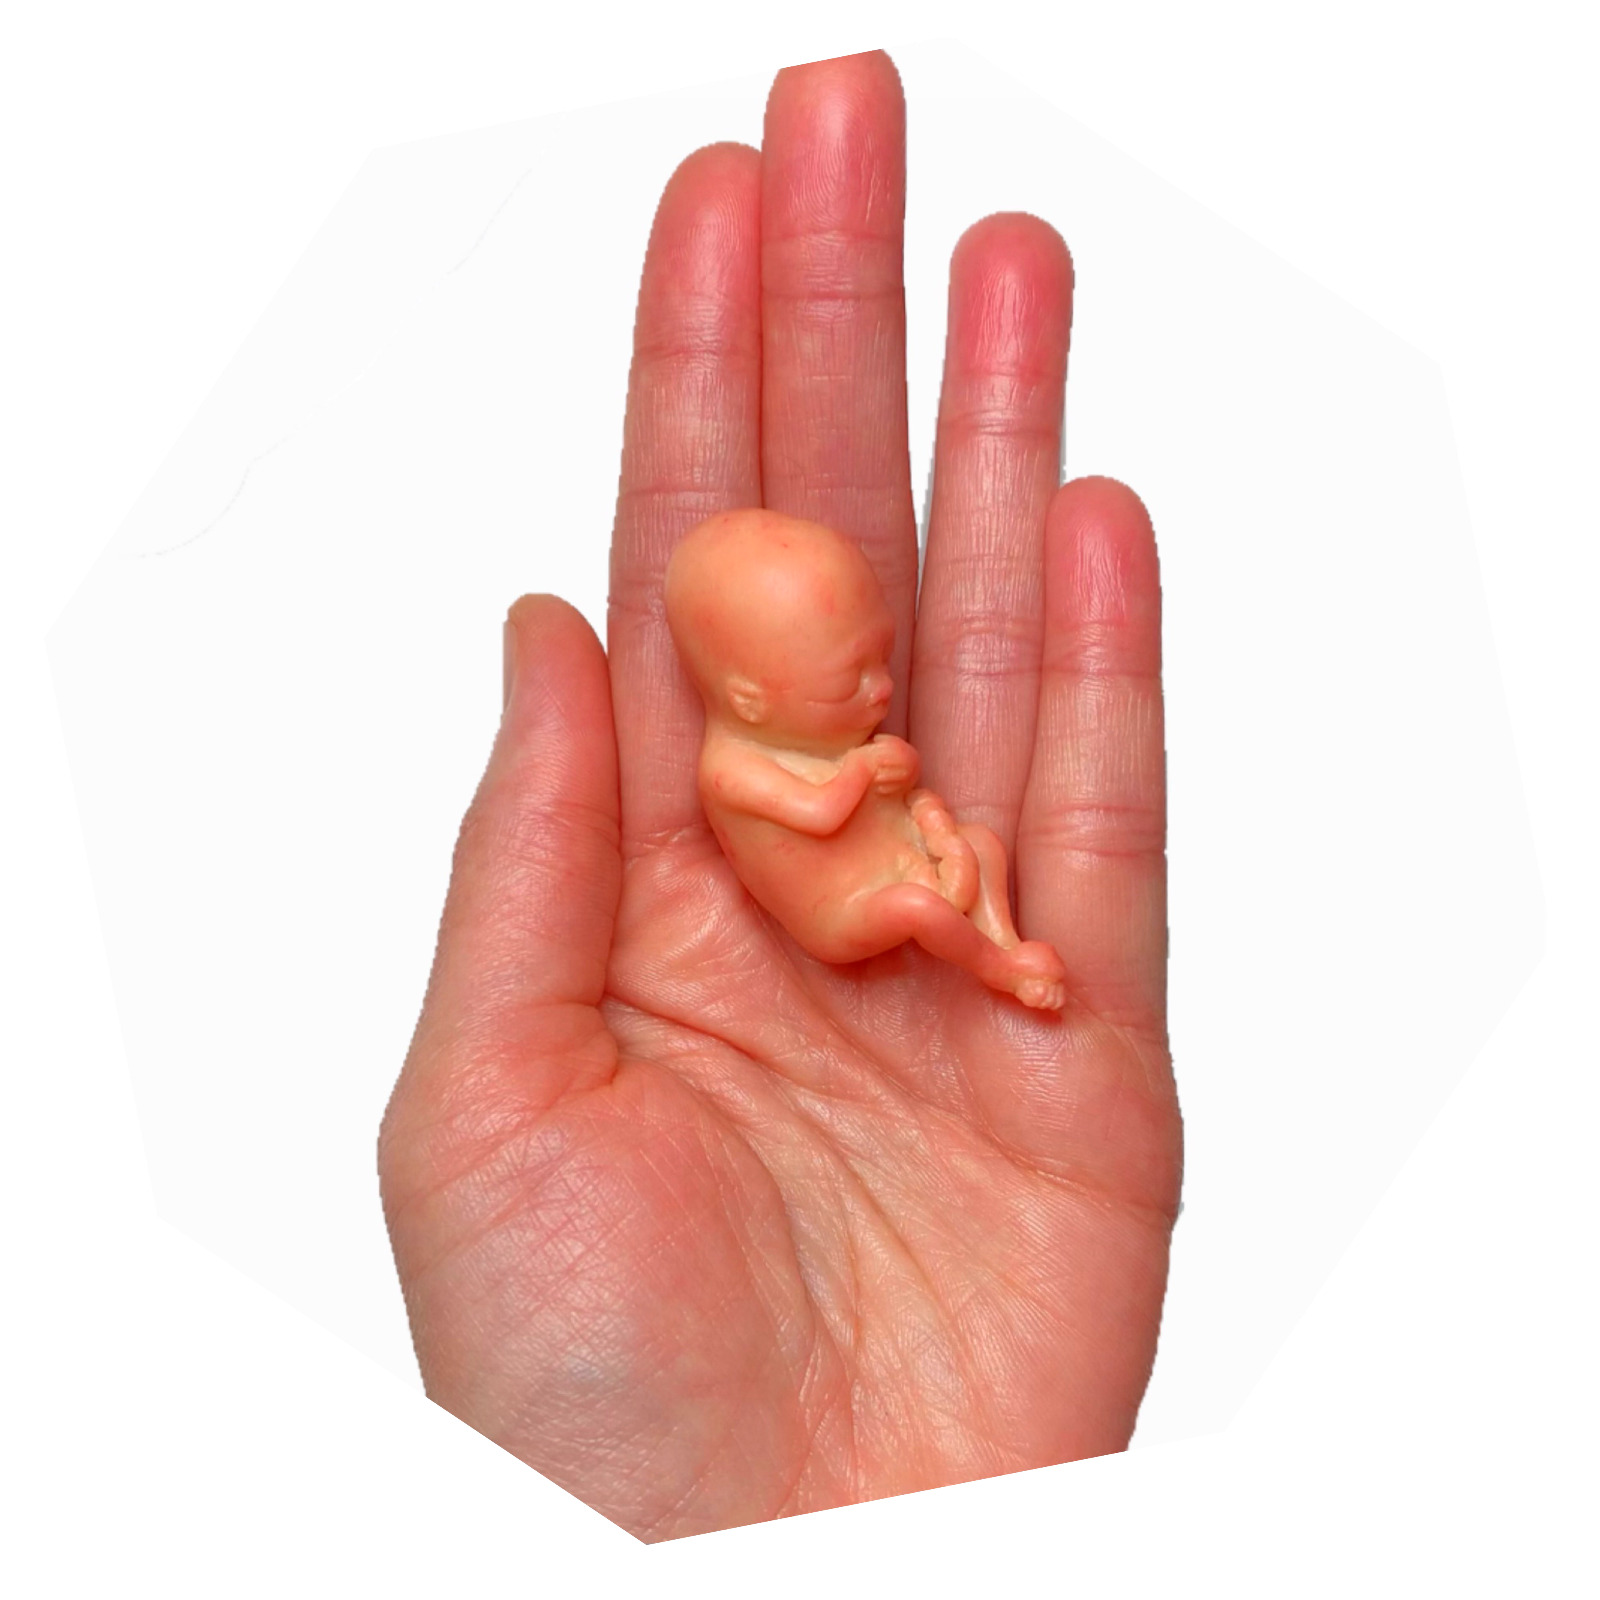 12 Weeks Baby Fetus, Stage of Fetal Development (Memorial/Miscarriage/Keepsake)